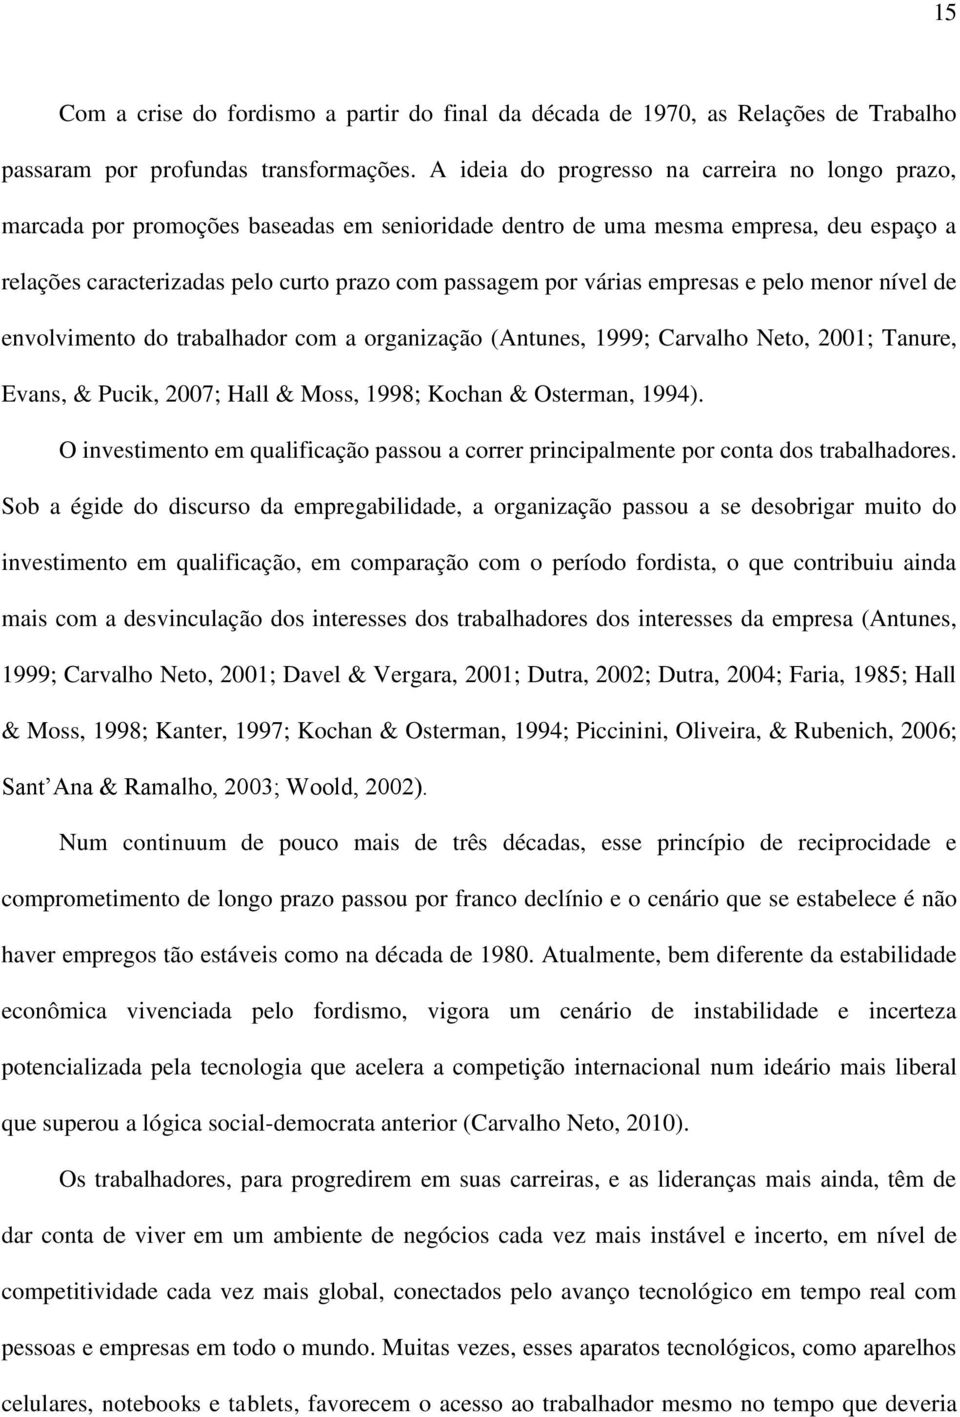 várias empresas e pelo menor nível de envolvimento do trabalhador com a organização (Antunes, 1999; Carvalho Neto, 2001; Tanure, Evans, & Pucik, 2007; Hall & Moss, 1998; Kochan & Osterman, 1994).